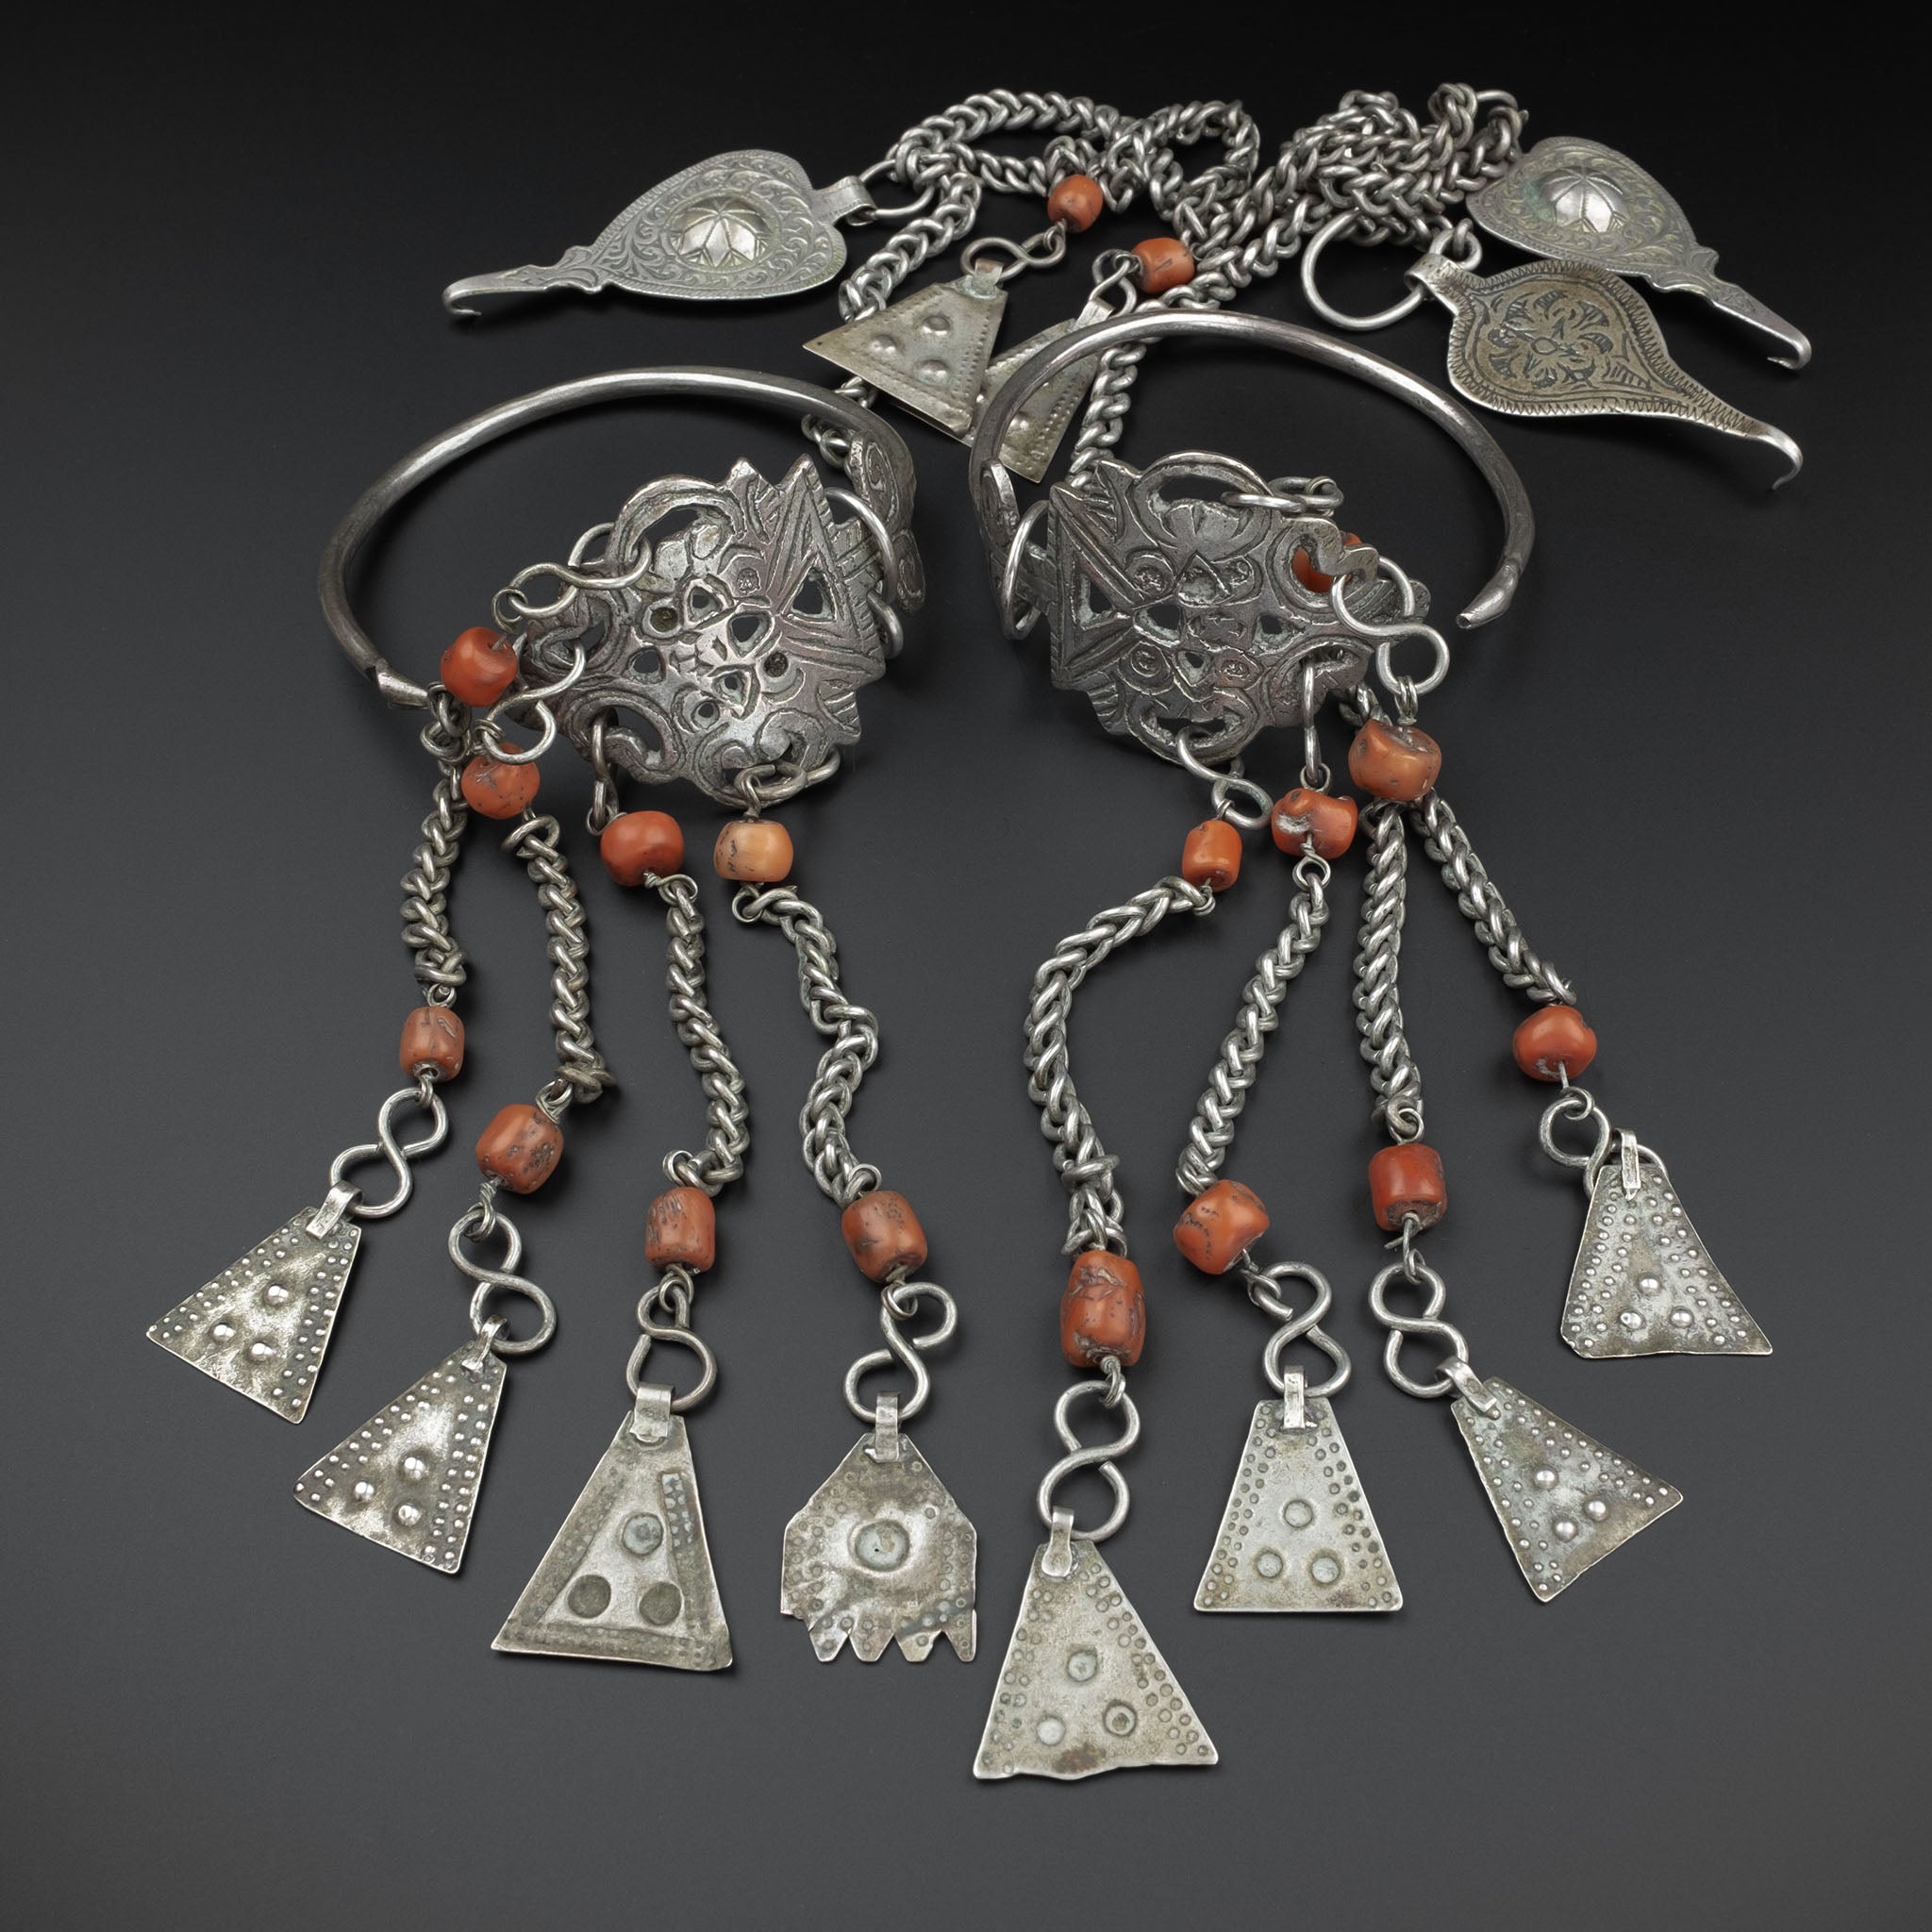 Antique Moroccan Silver Headdress & Temporals, Middle Atlas Mountains - RARE